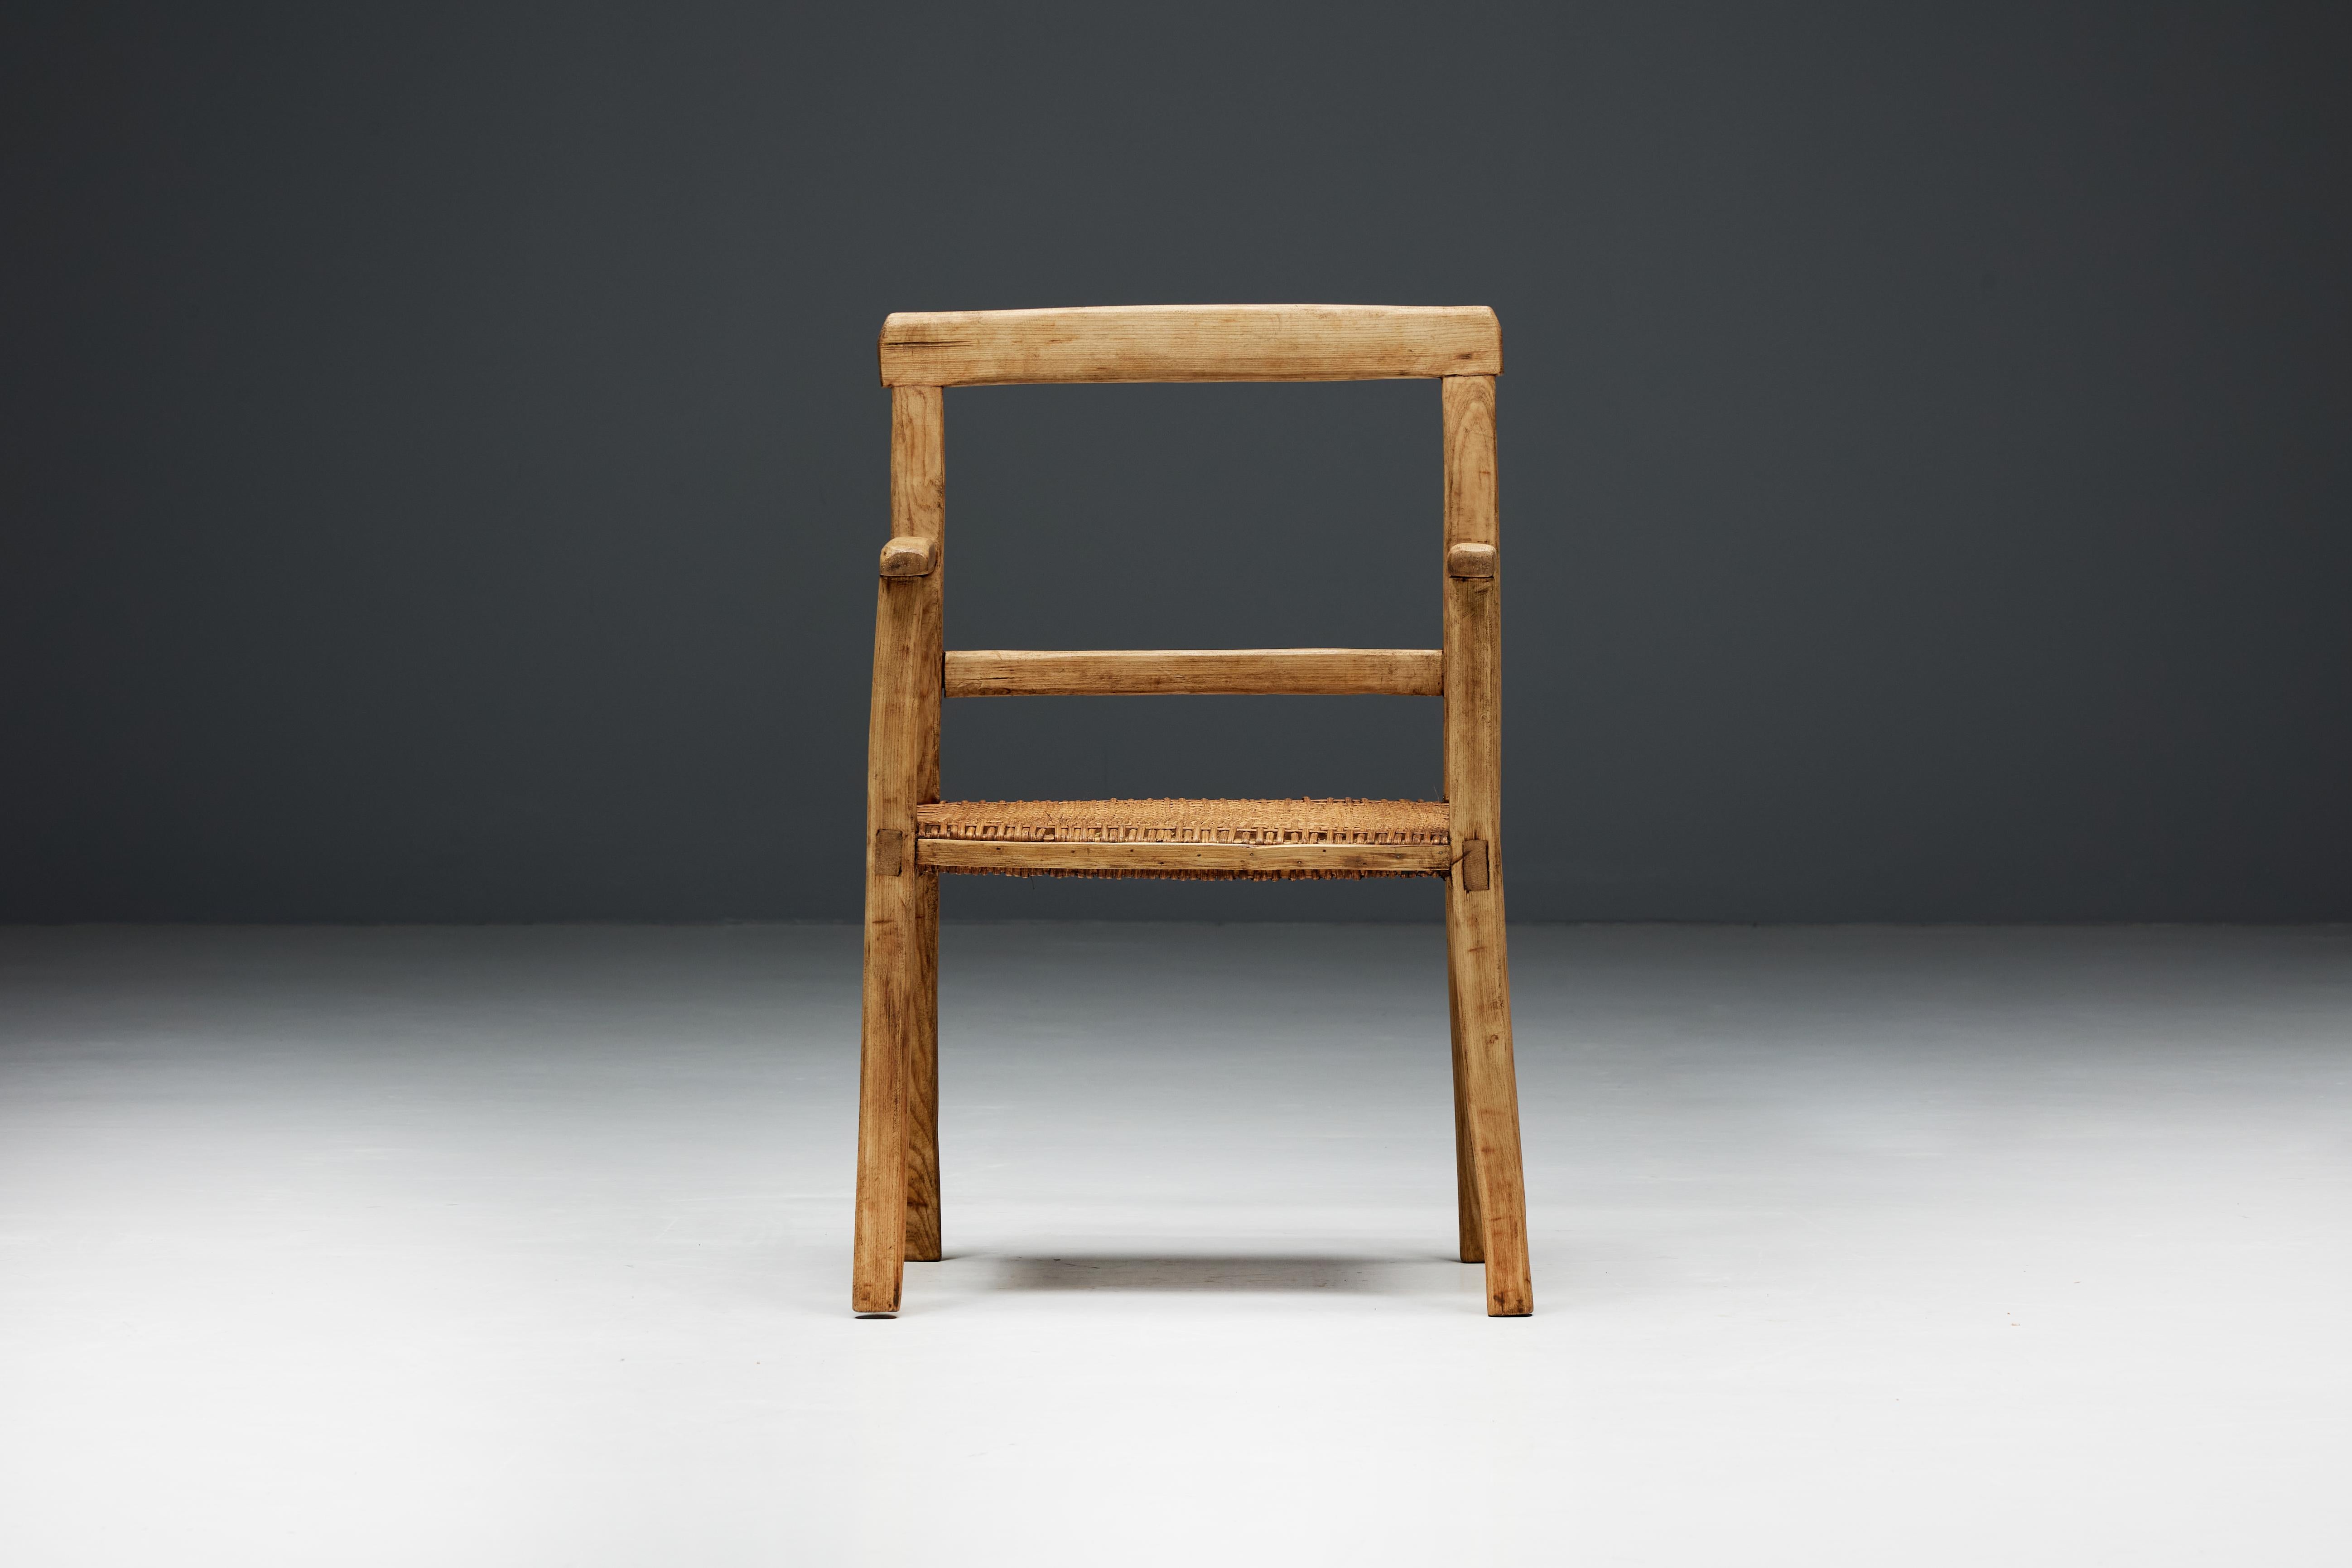 Handwerklich gefertigter Sessel aus dem 19. Jahrhundert, hergestellt in Frankreich aus massivem hellem Holz und einem Sitz aus Rattan. Die Verbindung dieser MATERIALIEN schafft eine harmonische Mischung, die eine heitere Ruhe ausstrahlt und eine